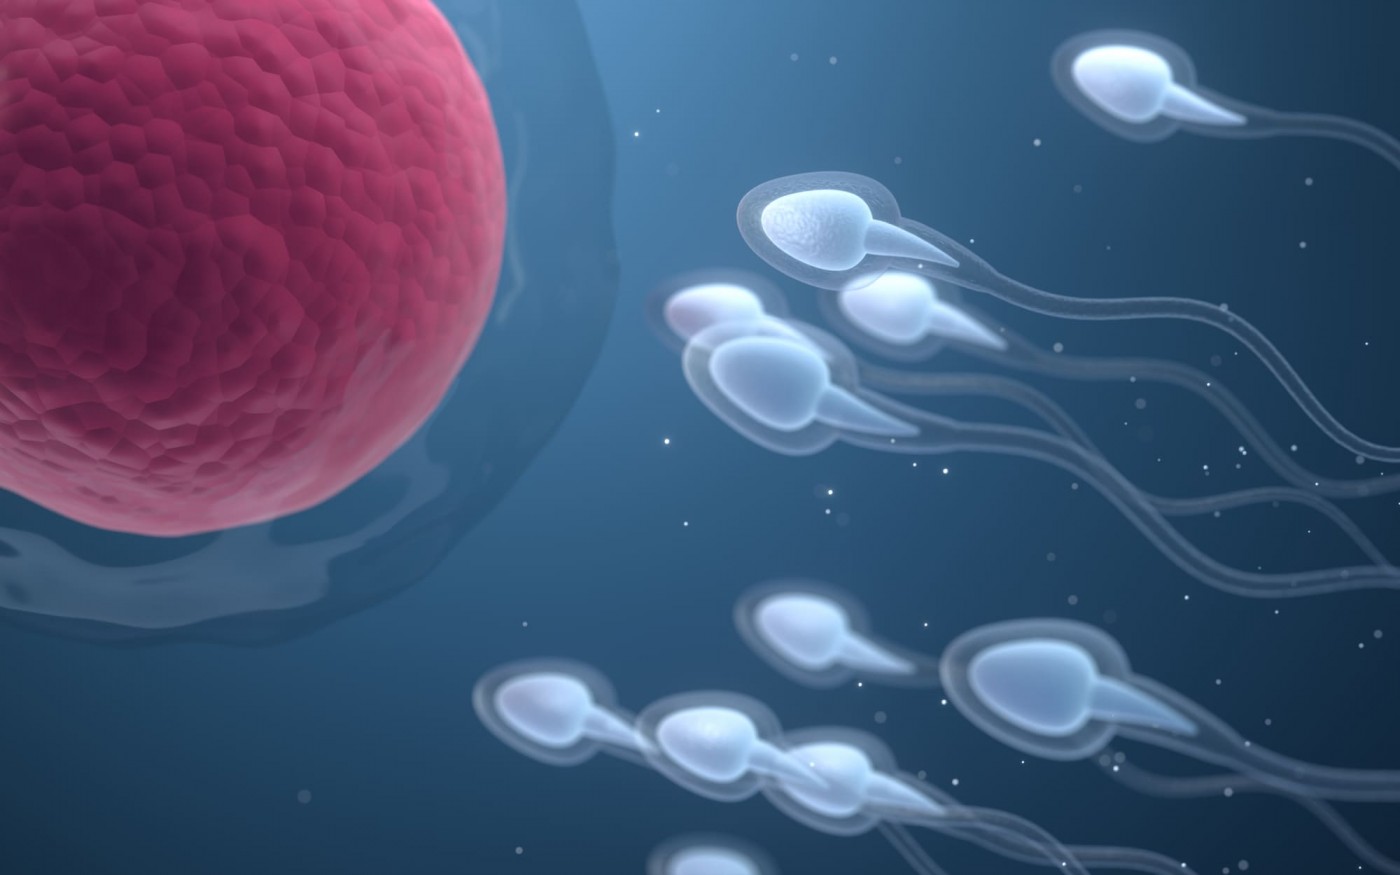 Сколько времени нужно, чтобы восстановилась сперма у мужчины для зачатия ребенка?